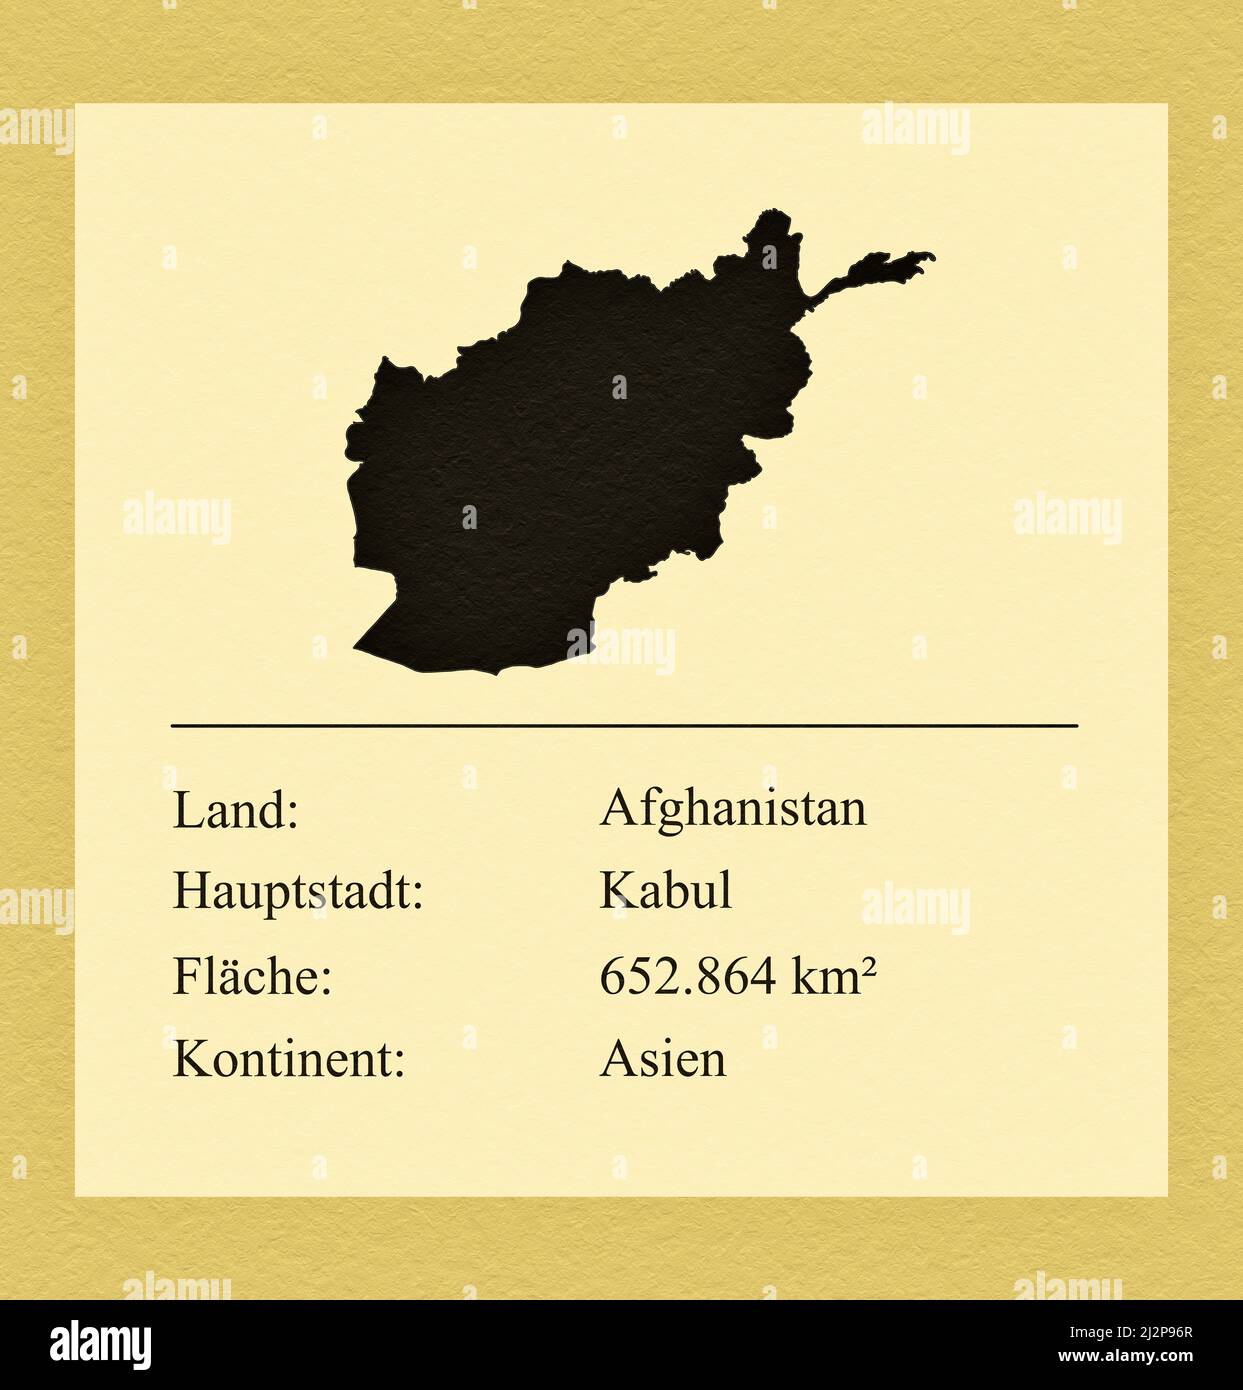 Umrisse des Landes Afganistán, darunter ein kleiner Steckbrief mit Ländernamen, Hauptstadt, Fläche und Kontinent Foto de stock